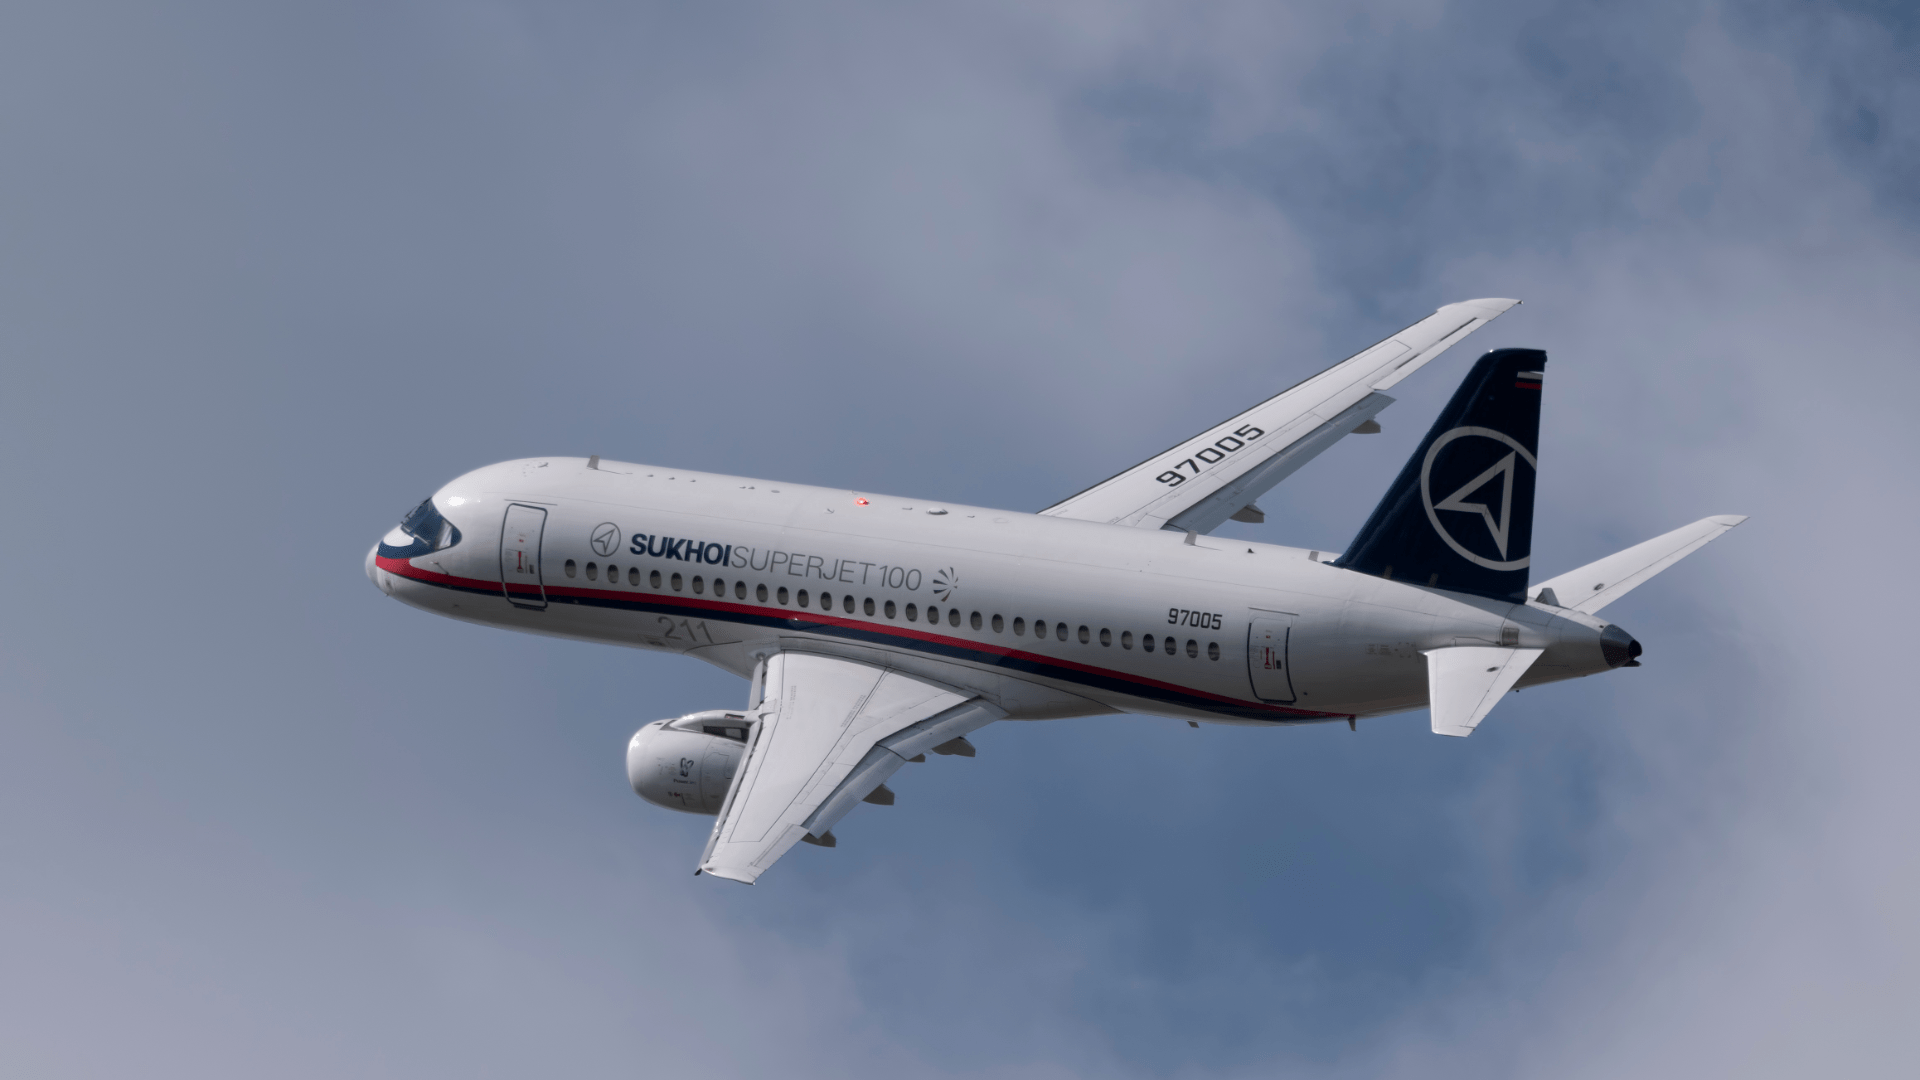 Sukhoi Superjet приземлился на запасном аэродроме Тюмени из-за неполадки